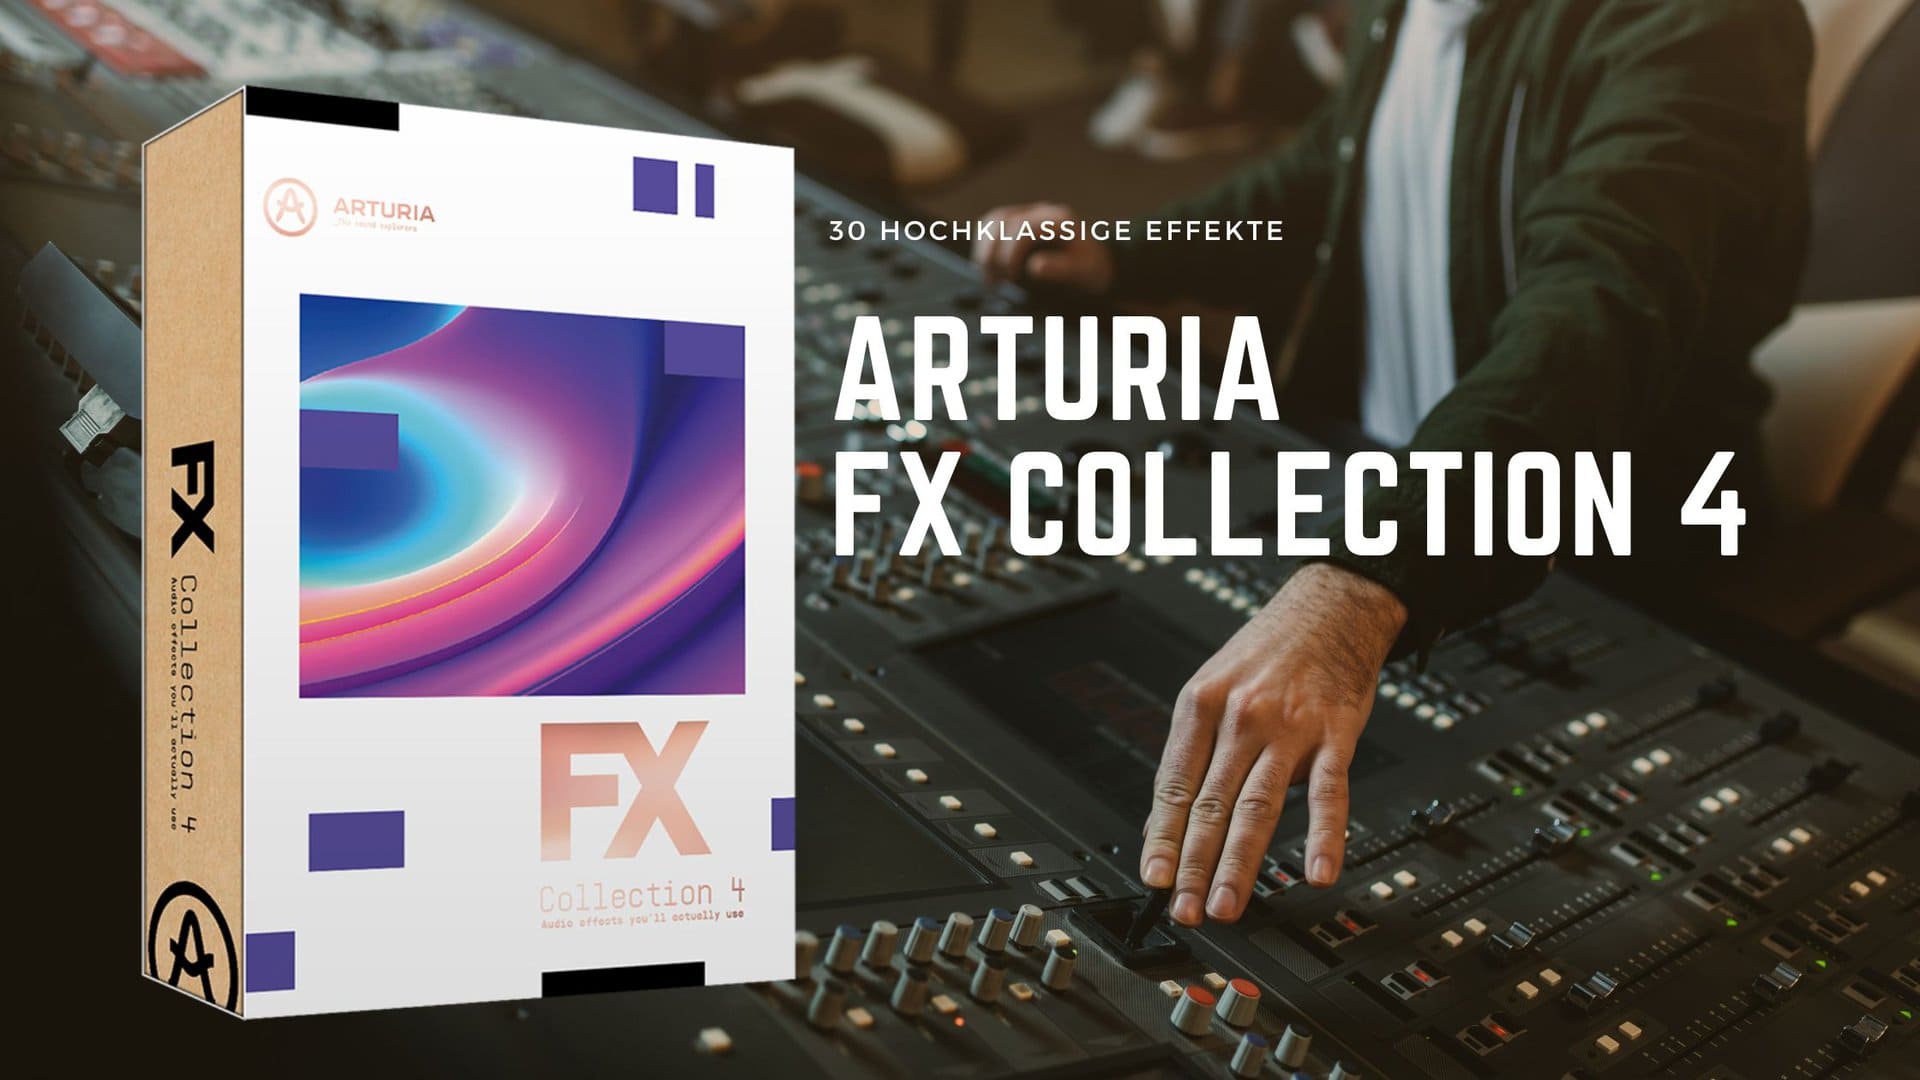 Arturia hat die FX Collection 4 veröffentlicht